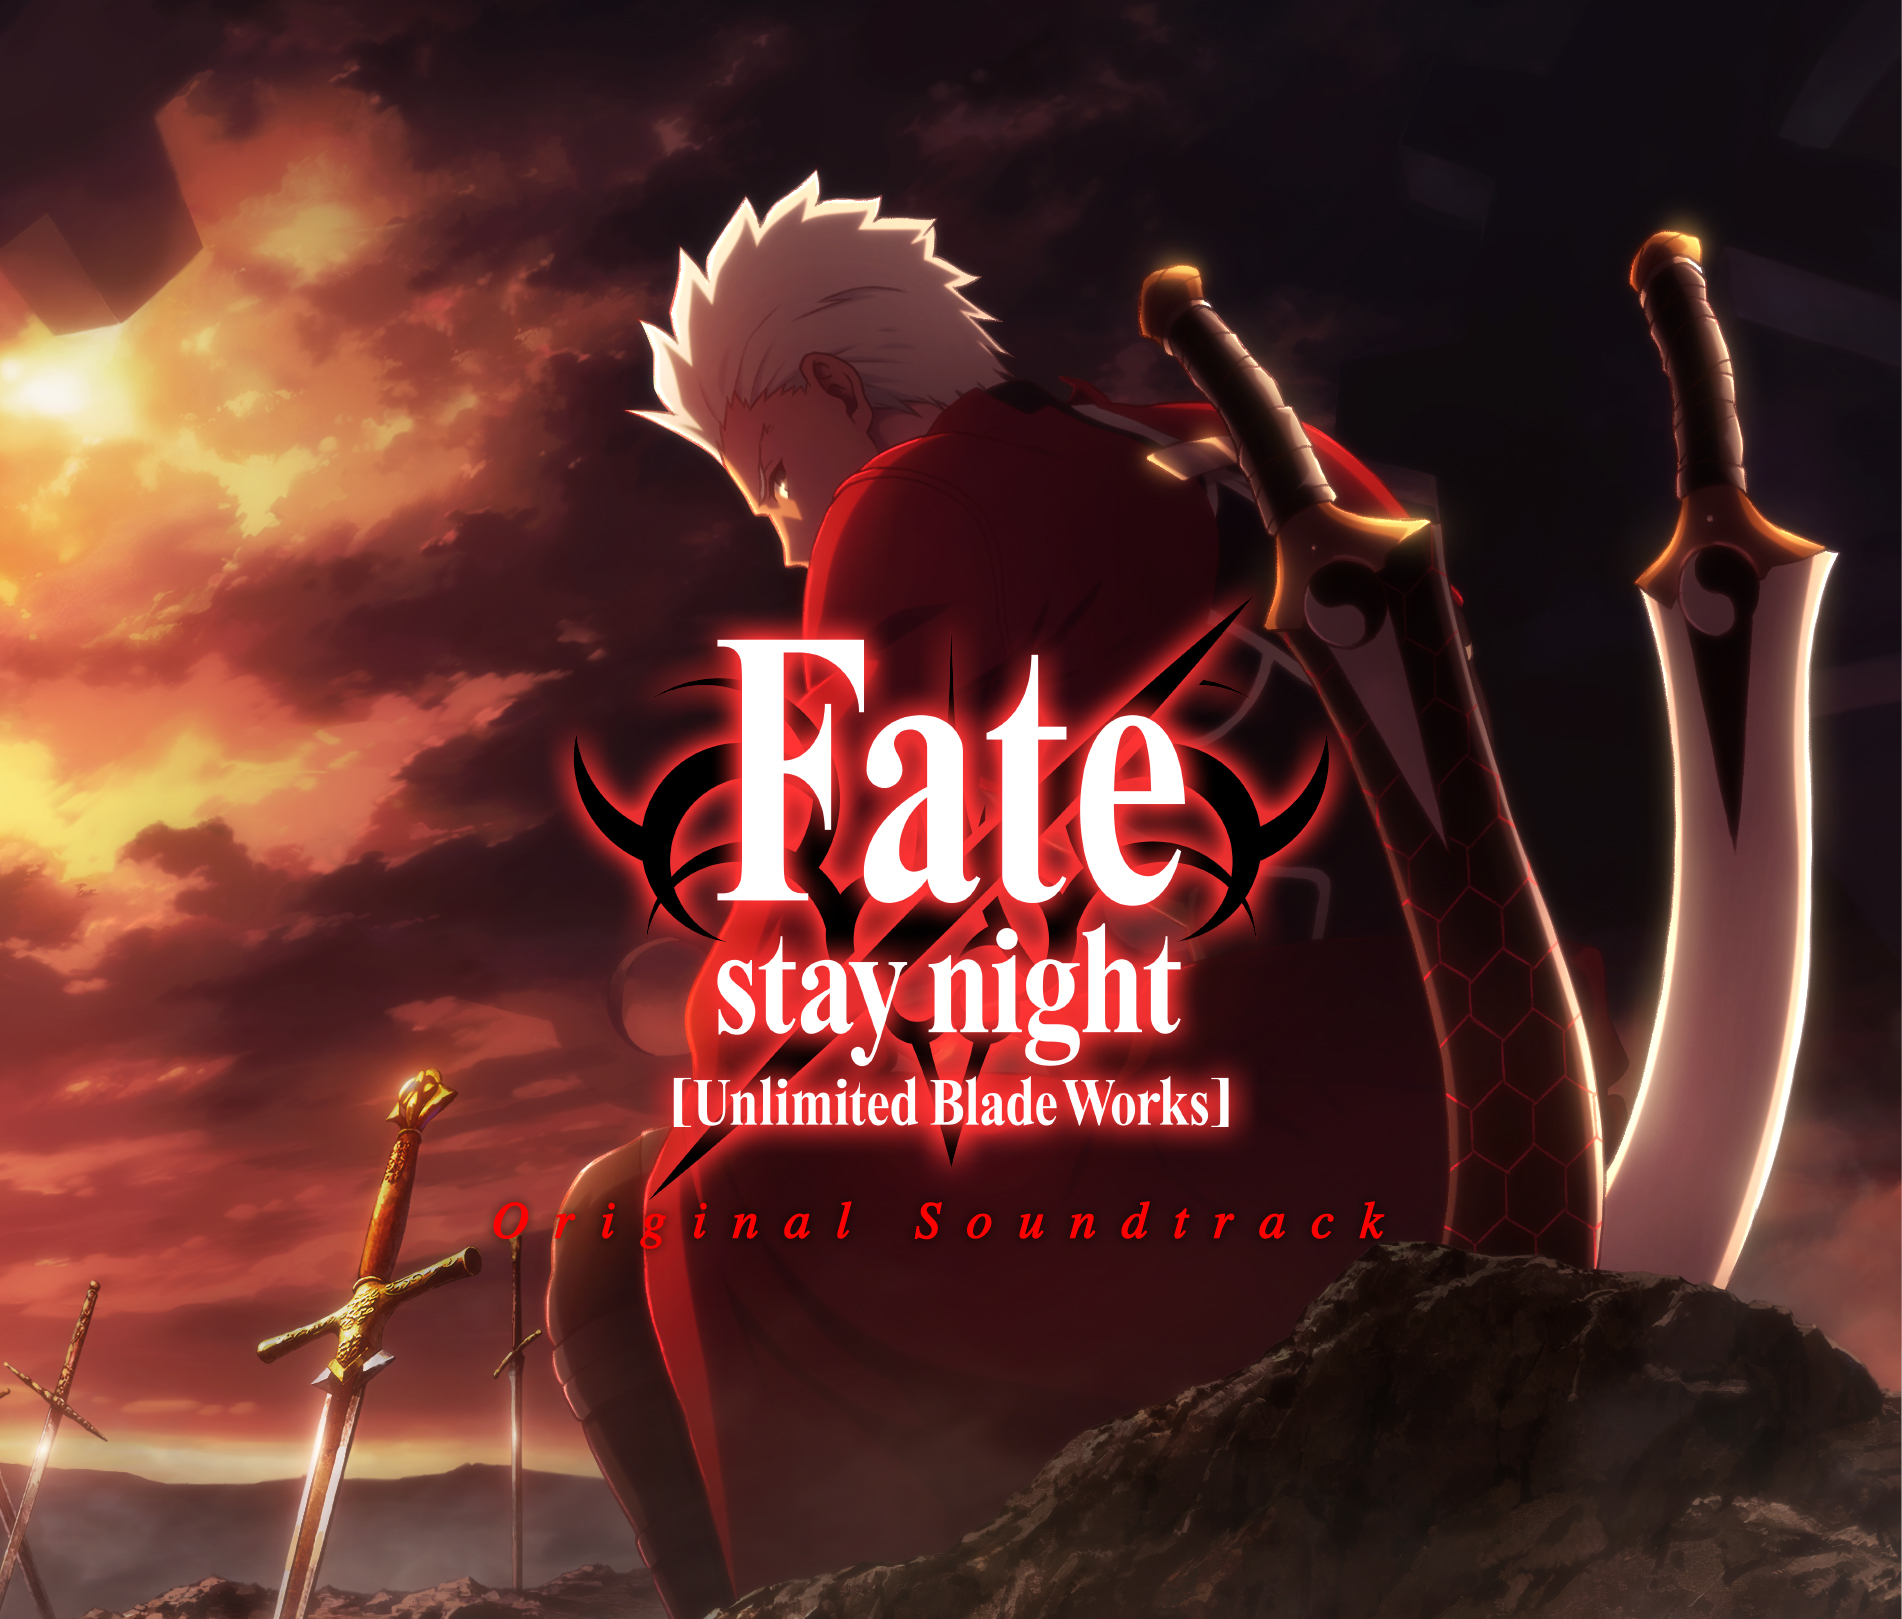 Fate Stay Night Unlimited Blade Works Original Soundtrackのufotable描き下ろしジャケットを公開 株式会社アニプレックスのプレスリリース